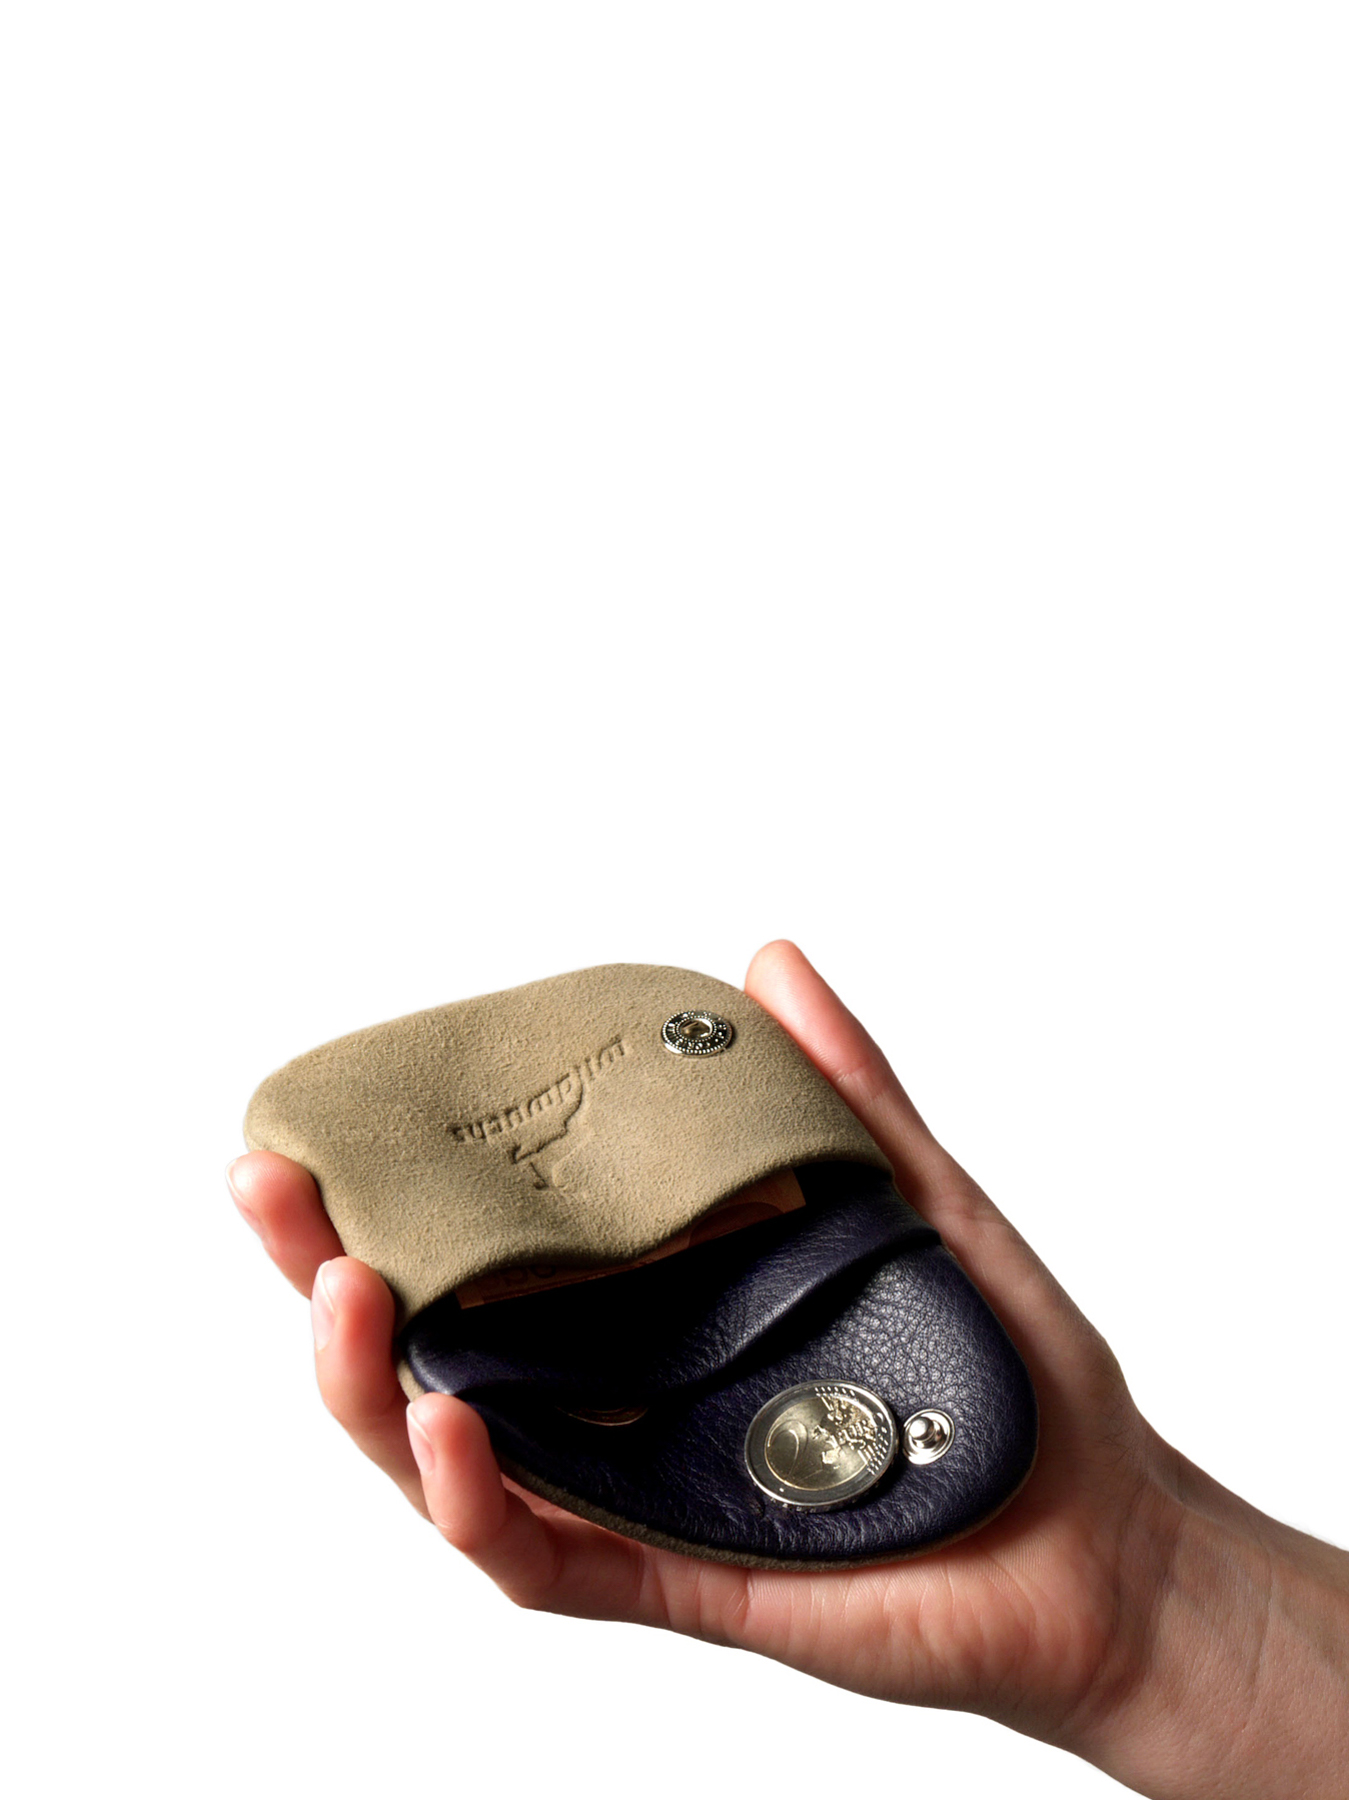 PAGO Geldbörse aus Hirschleder - Handschmeichler ohne Reißverschluss